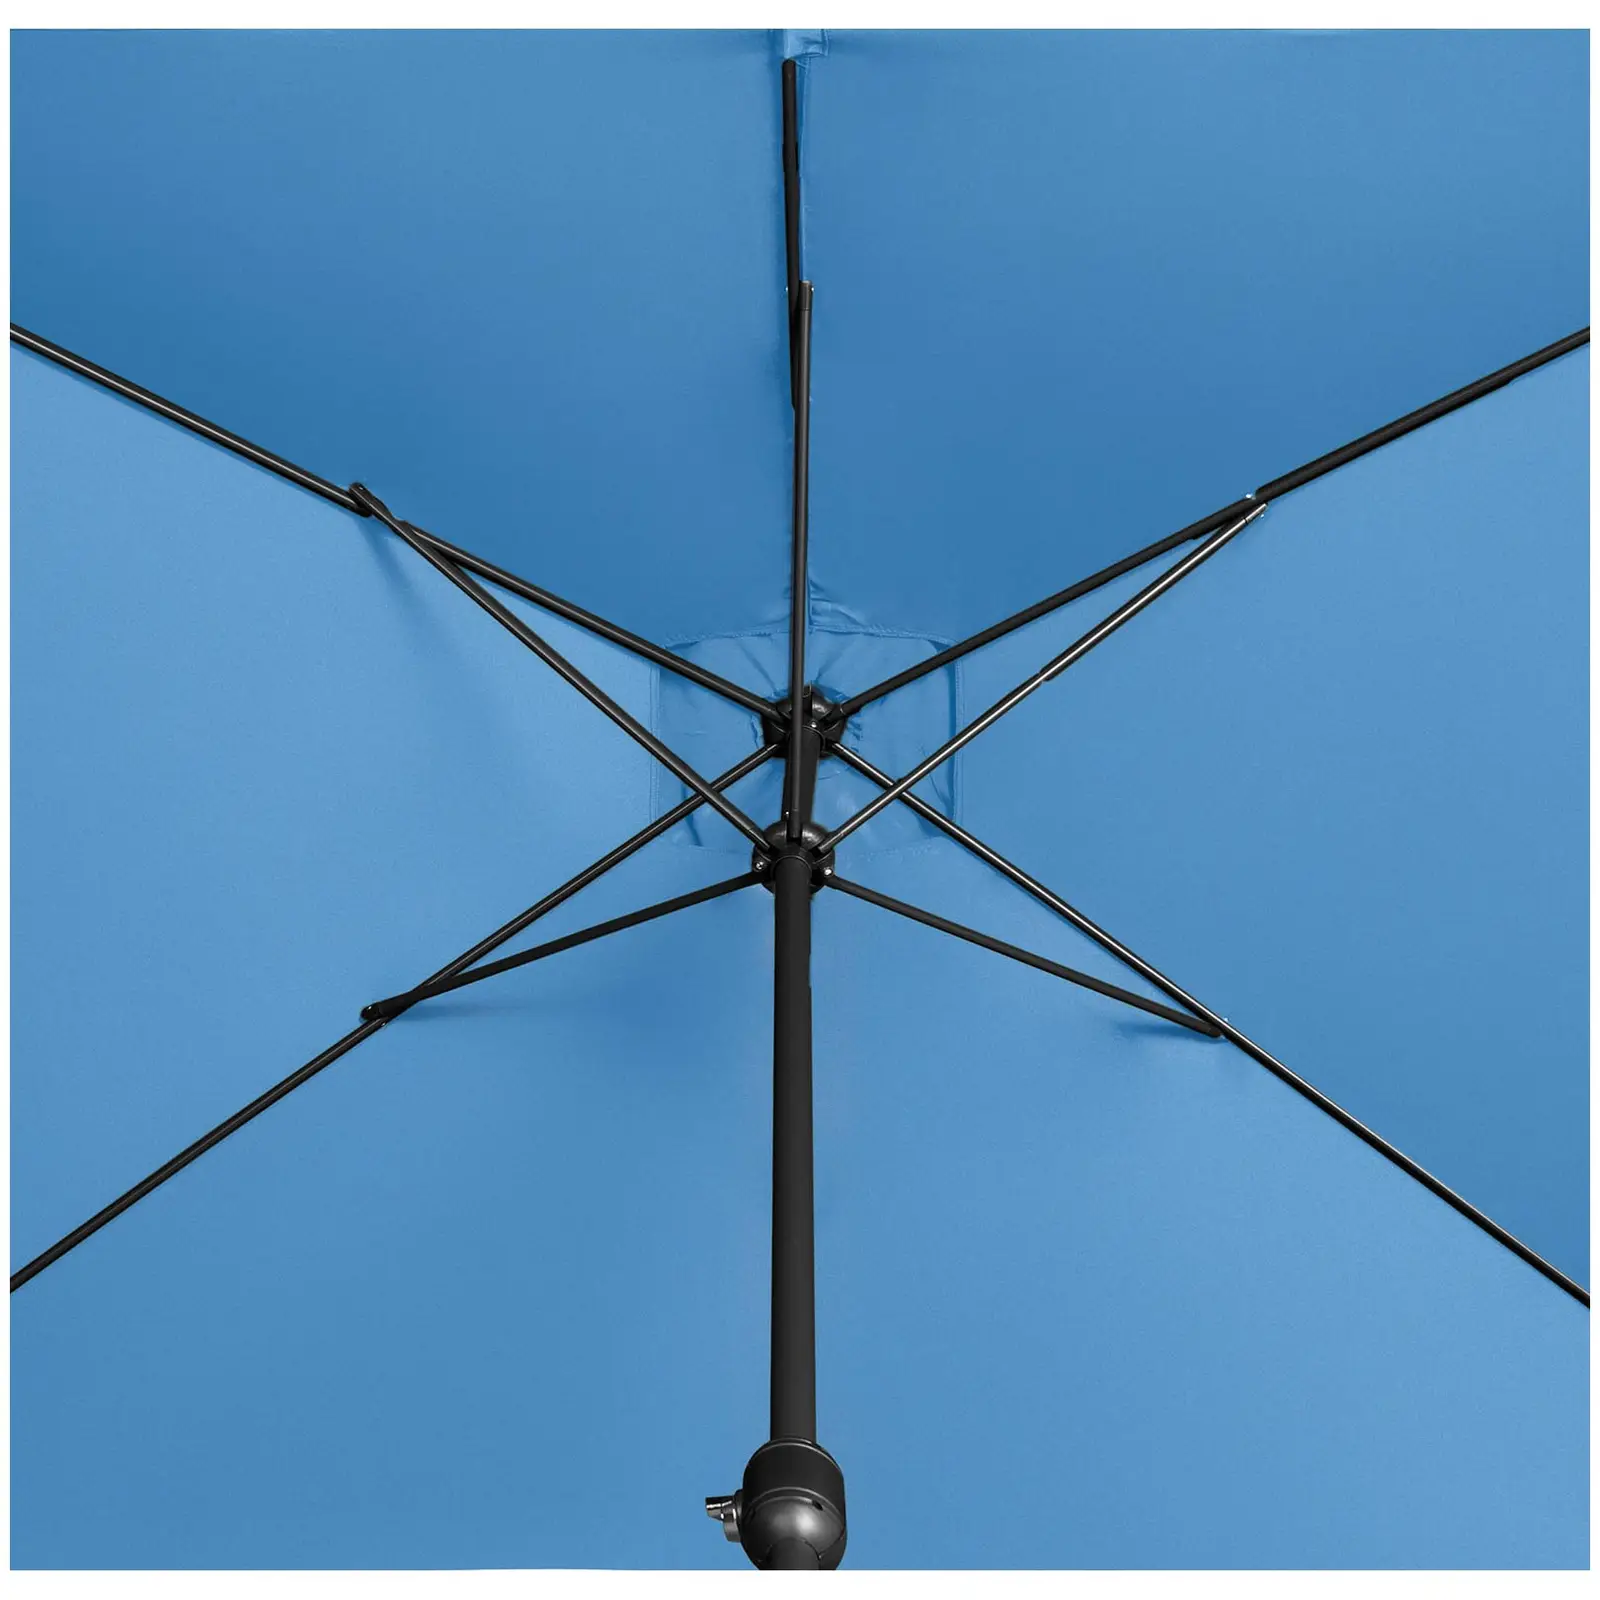 Seconda Mano Ombrellone da esterno - palo centrale - blu - rettangolare - 200 x 300 cm